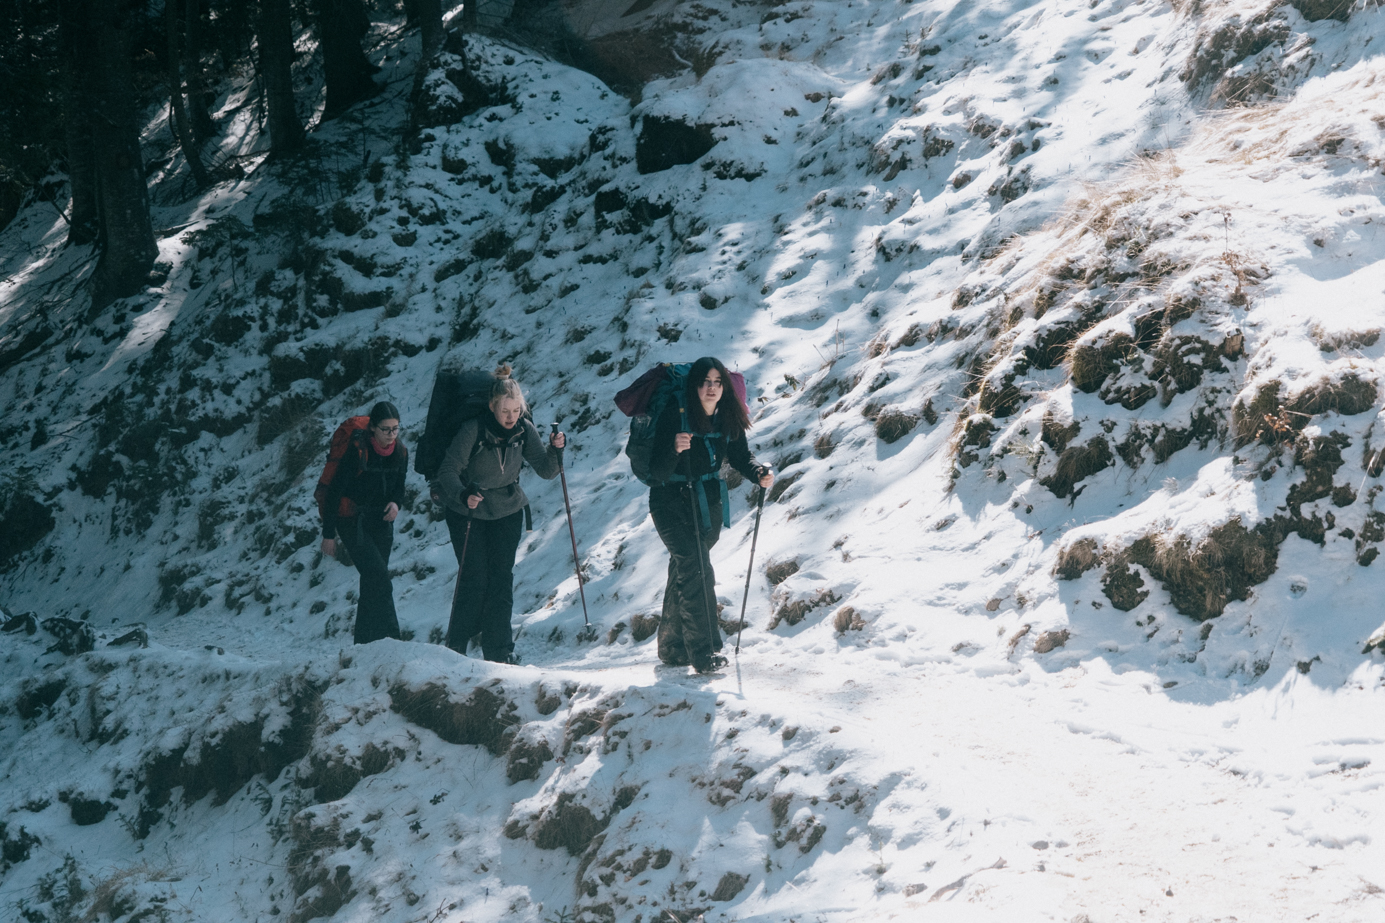 Trei cercetasi mergand pe un drum de munte inzapezit